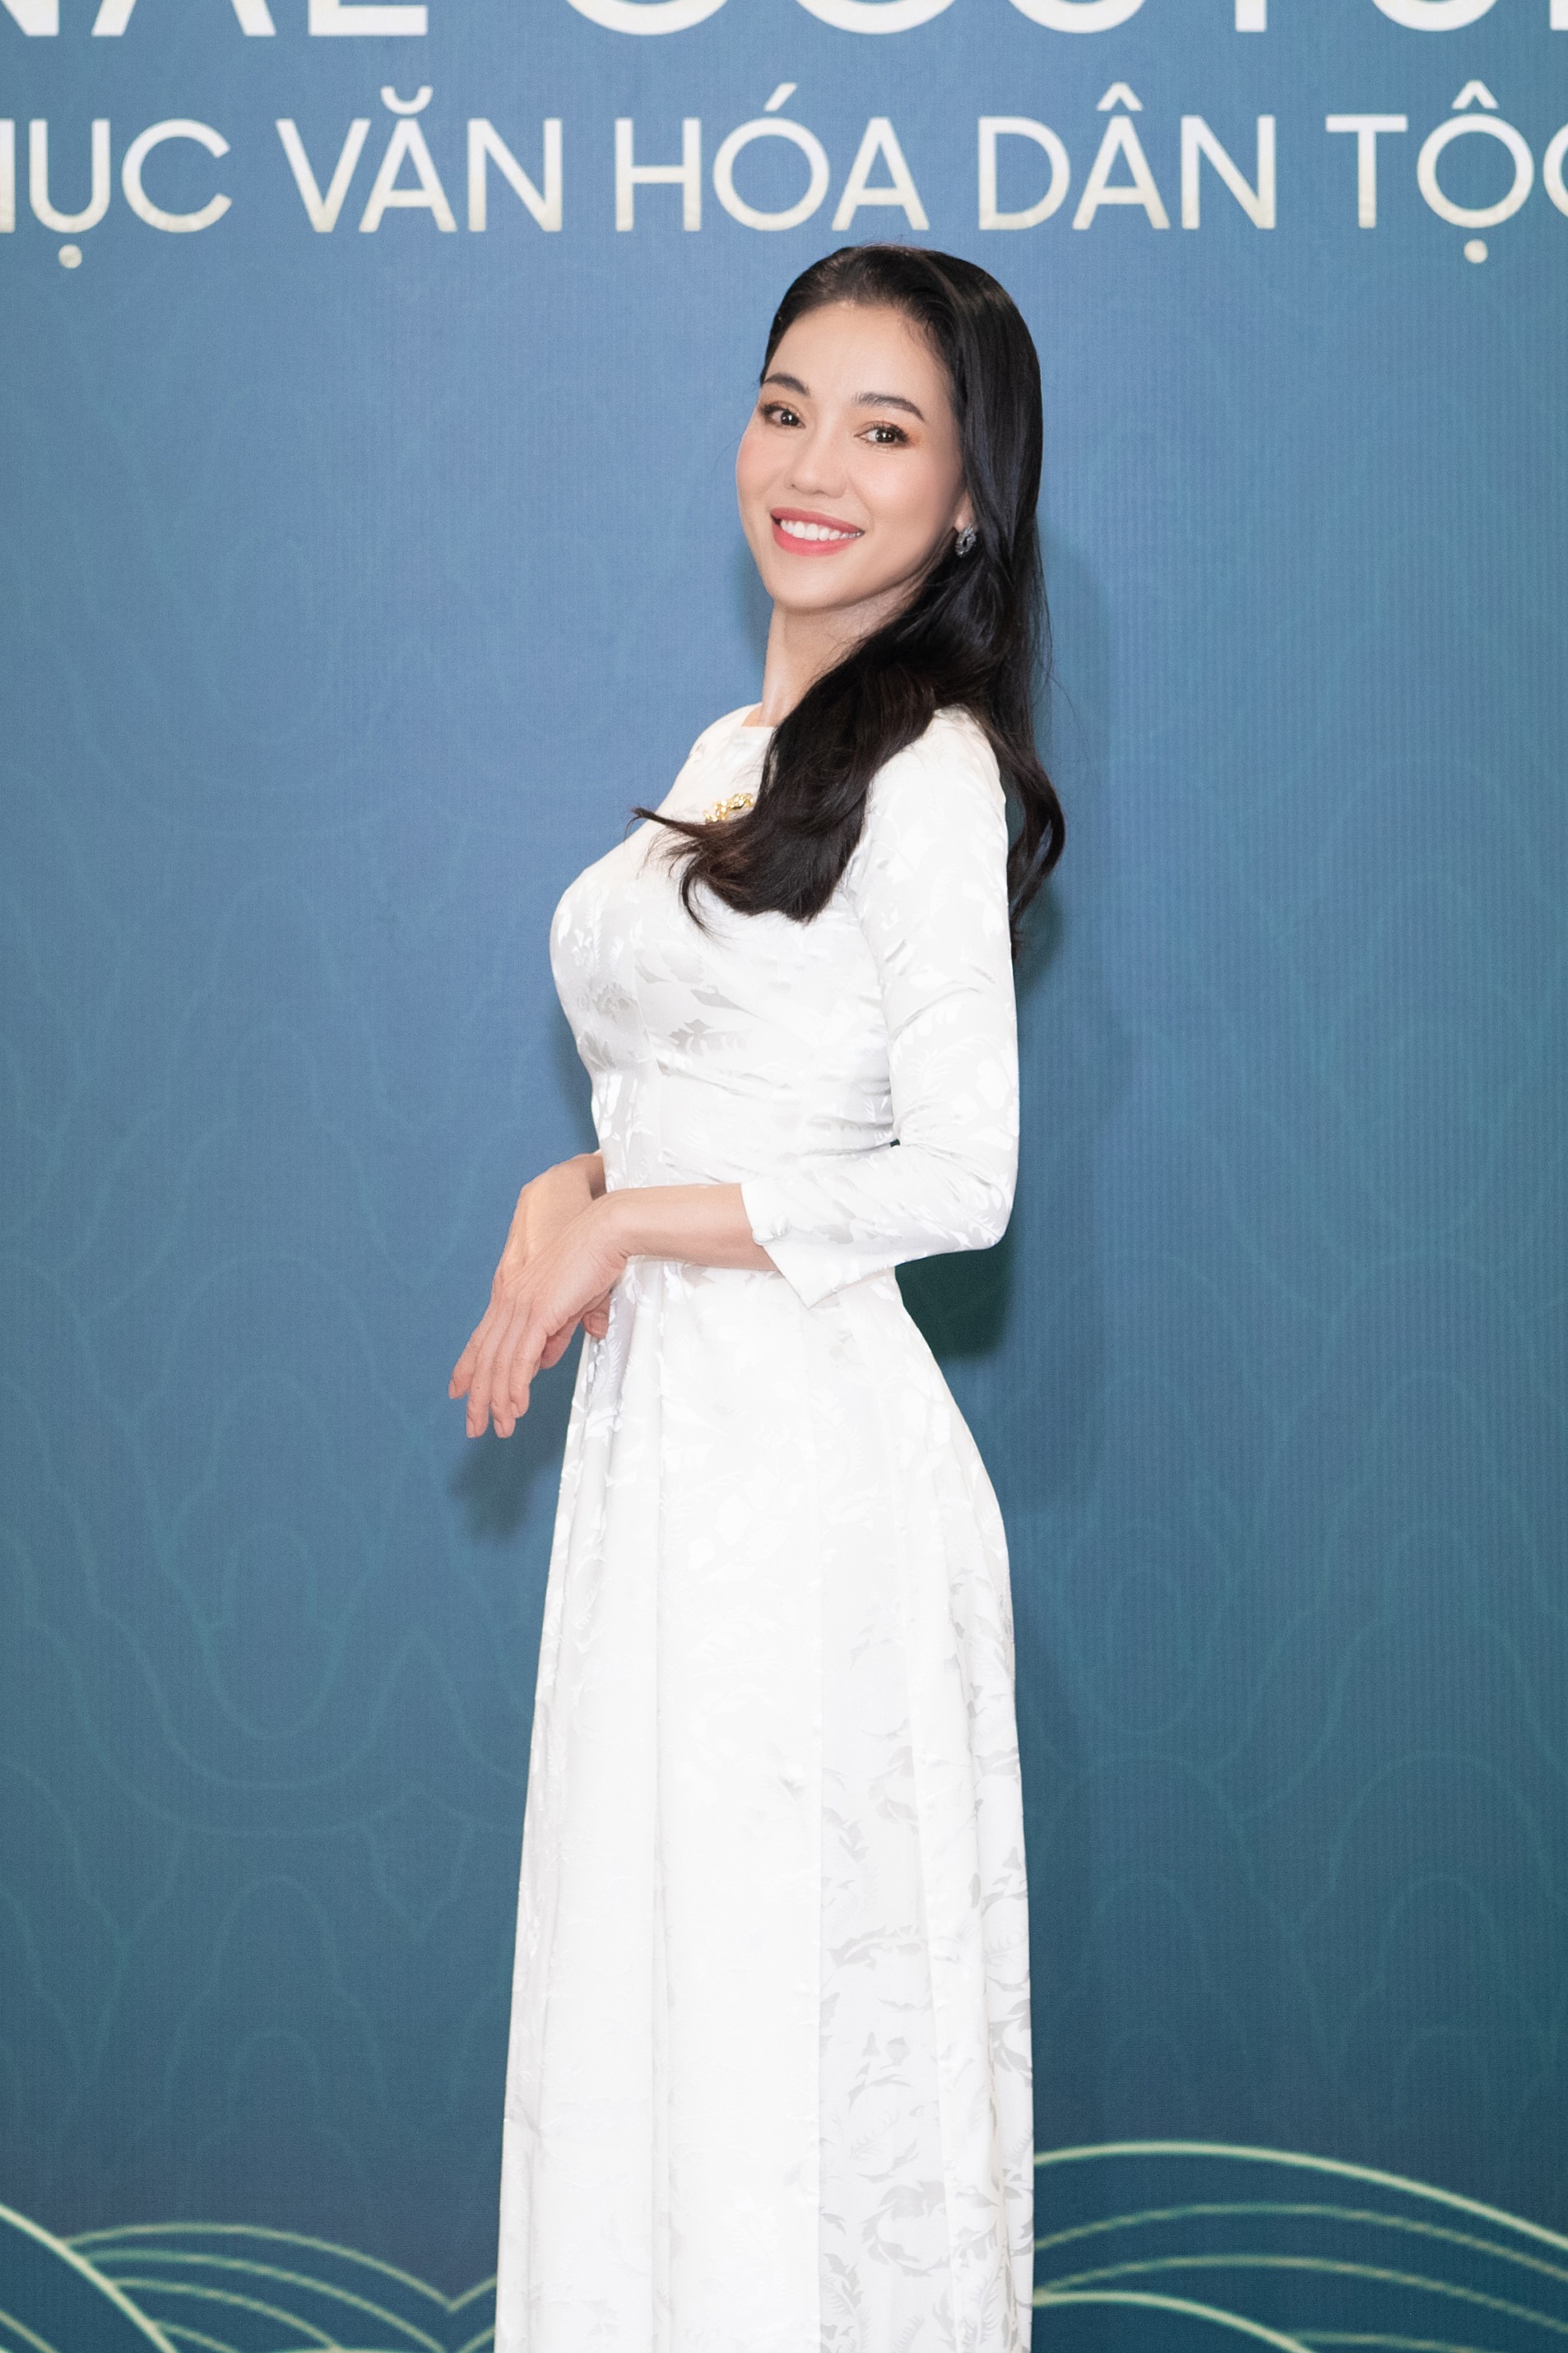 “Bà trùm Hoa hậu” Phạm Kim Dung lựa chọn chiếc áo dài trắng với điểm nhấn cổ thuyền đầy nữ tính và không kém phần quyền lực. Ảnh: NSCC.